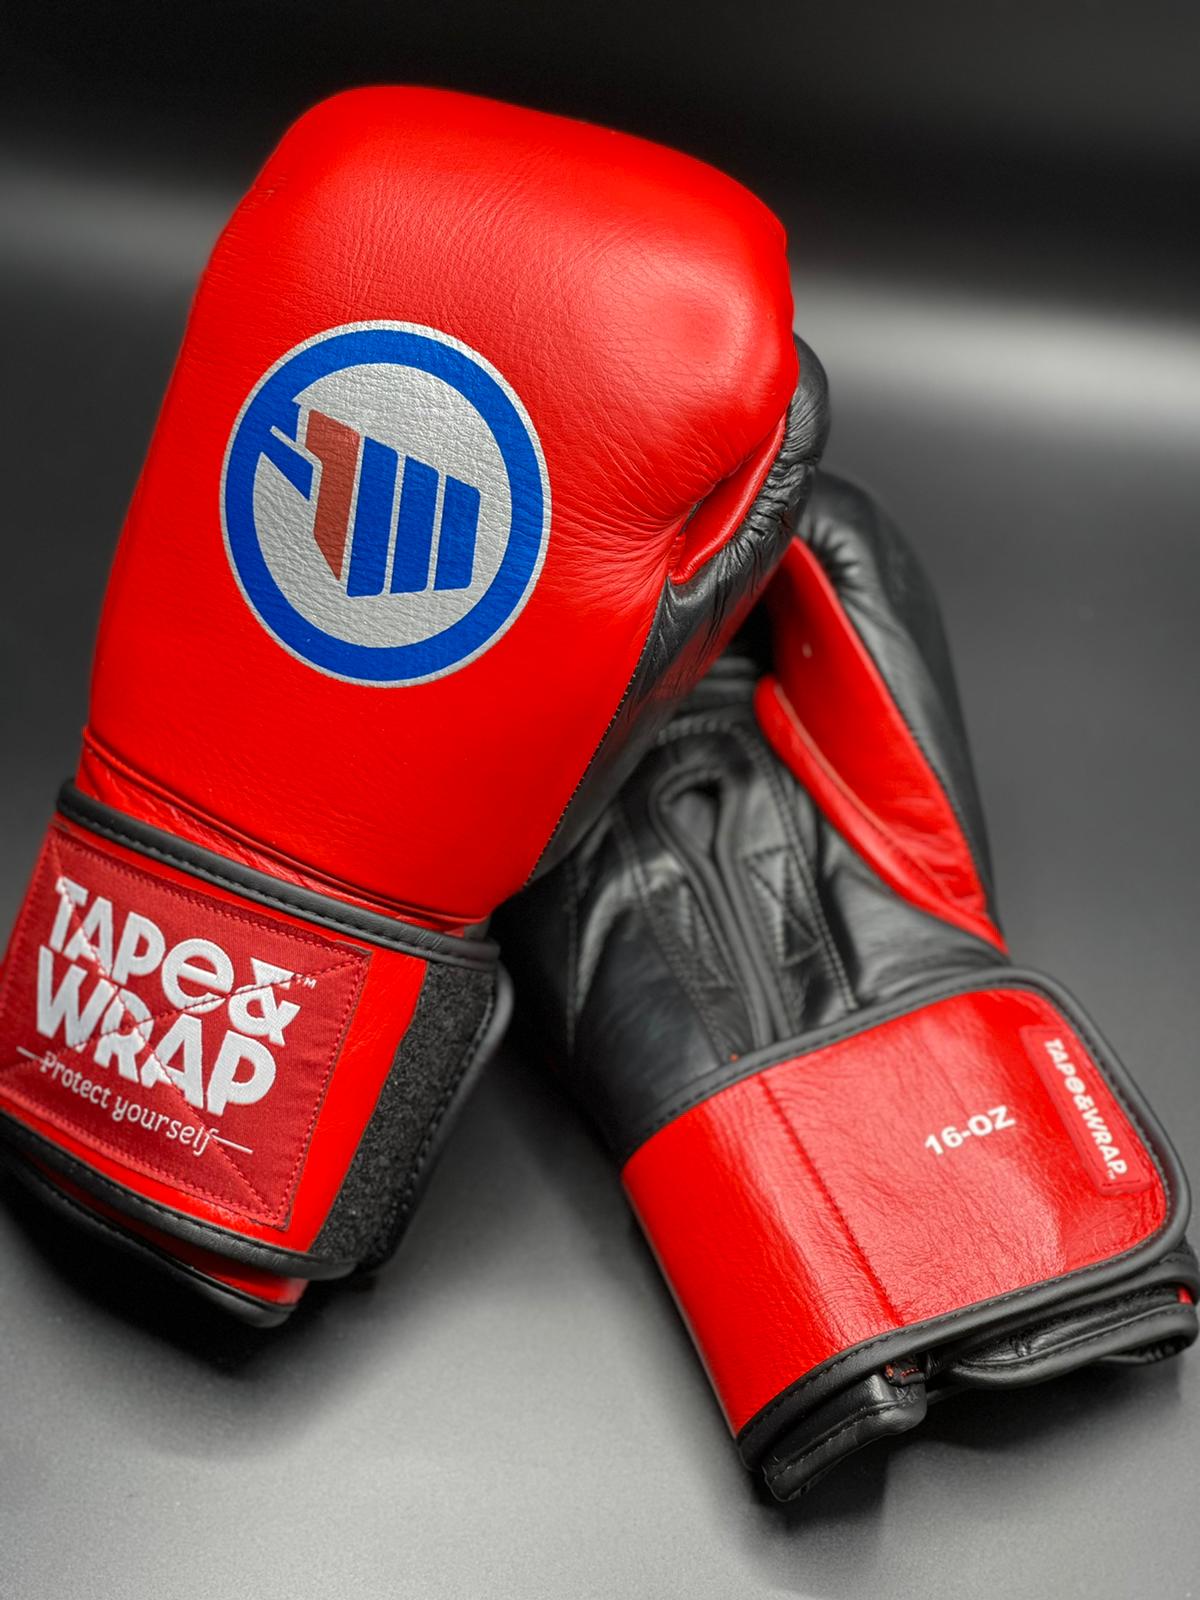 Engreído División lanzamiento Guantes de boxeo “Red and Black by T&W” con cierre de velcro – Tape&Wrap